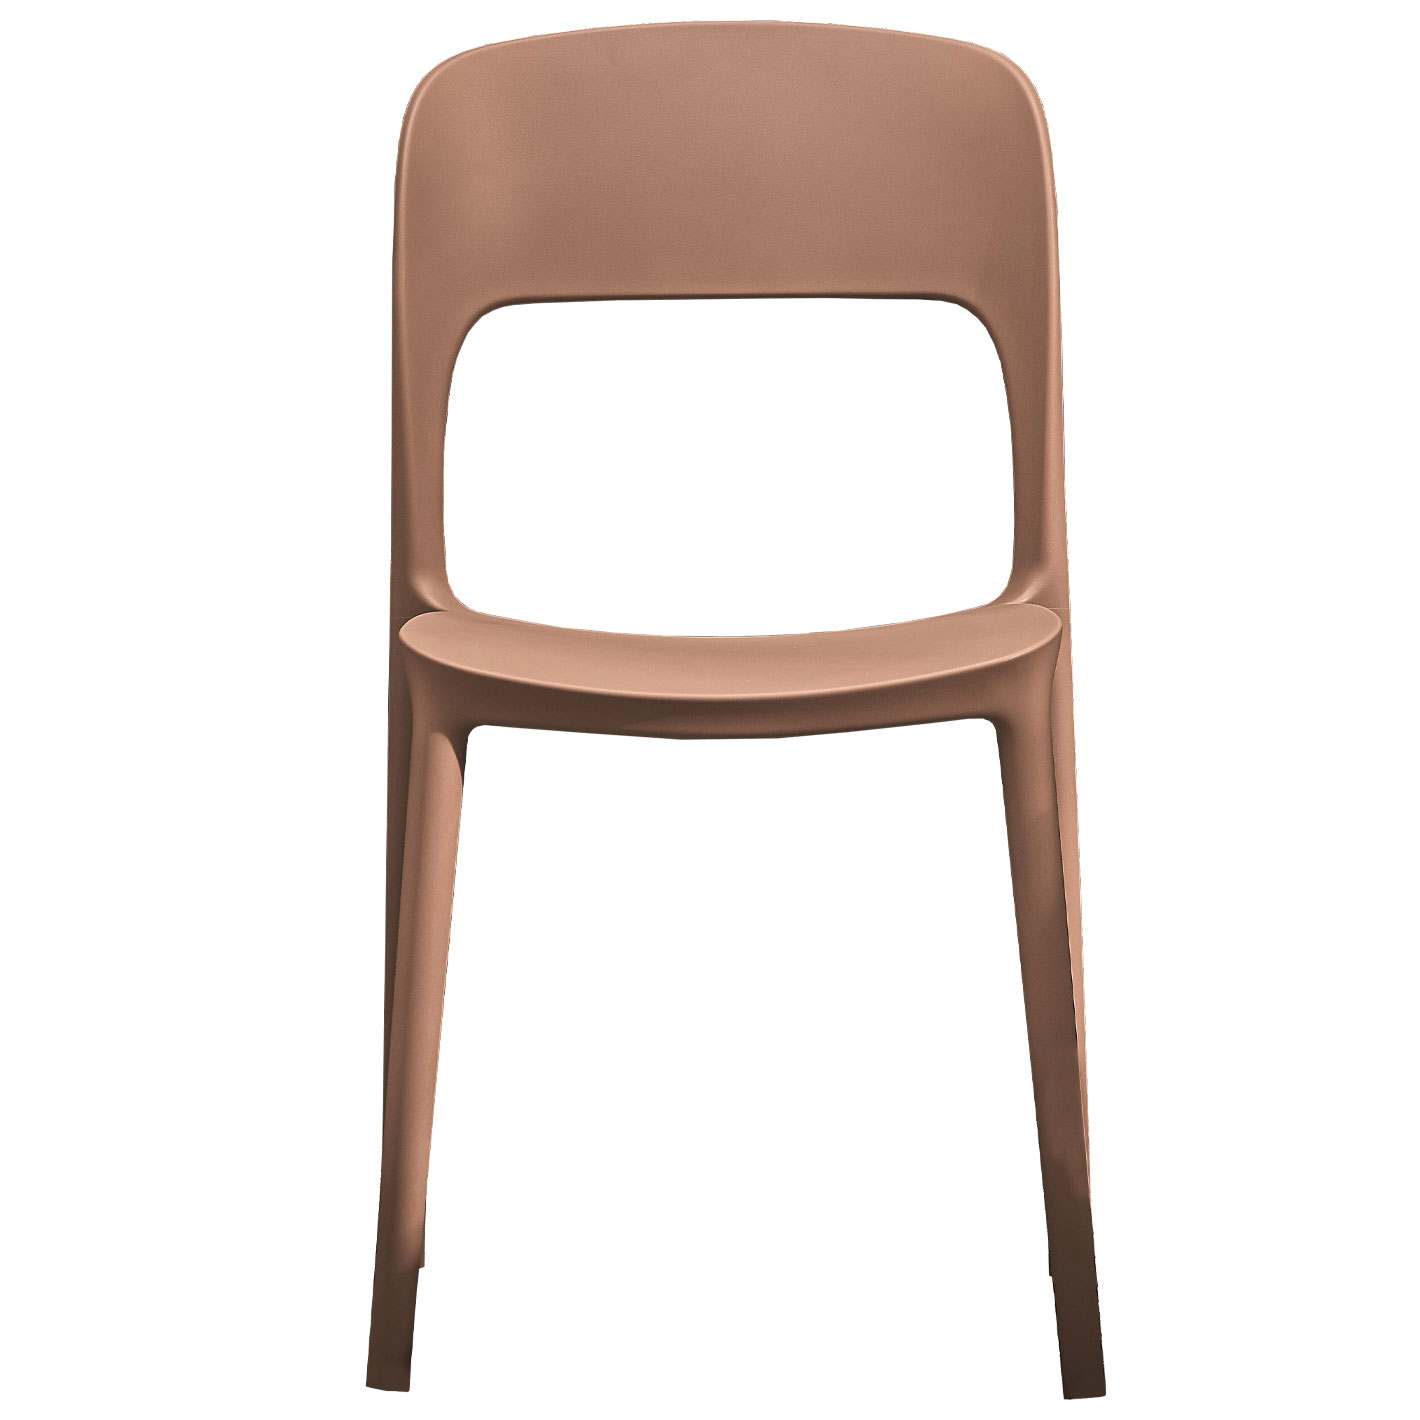 Tische & Stühle - GIPSY Stuhl